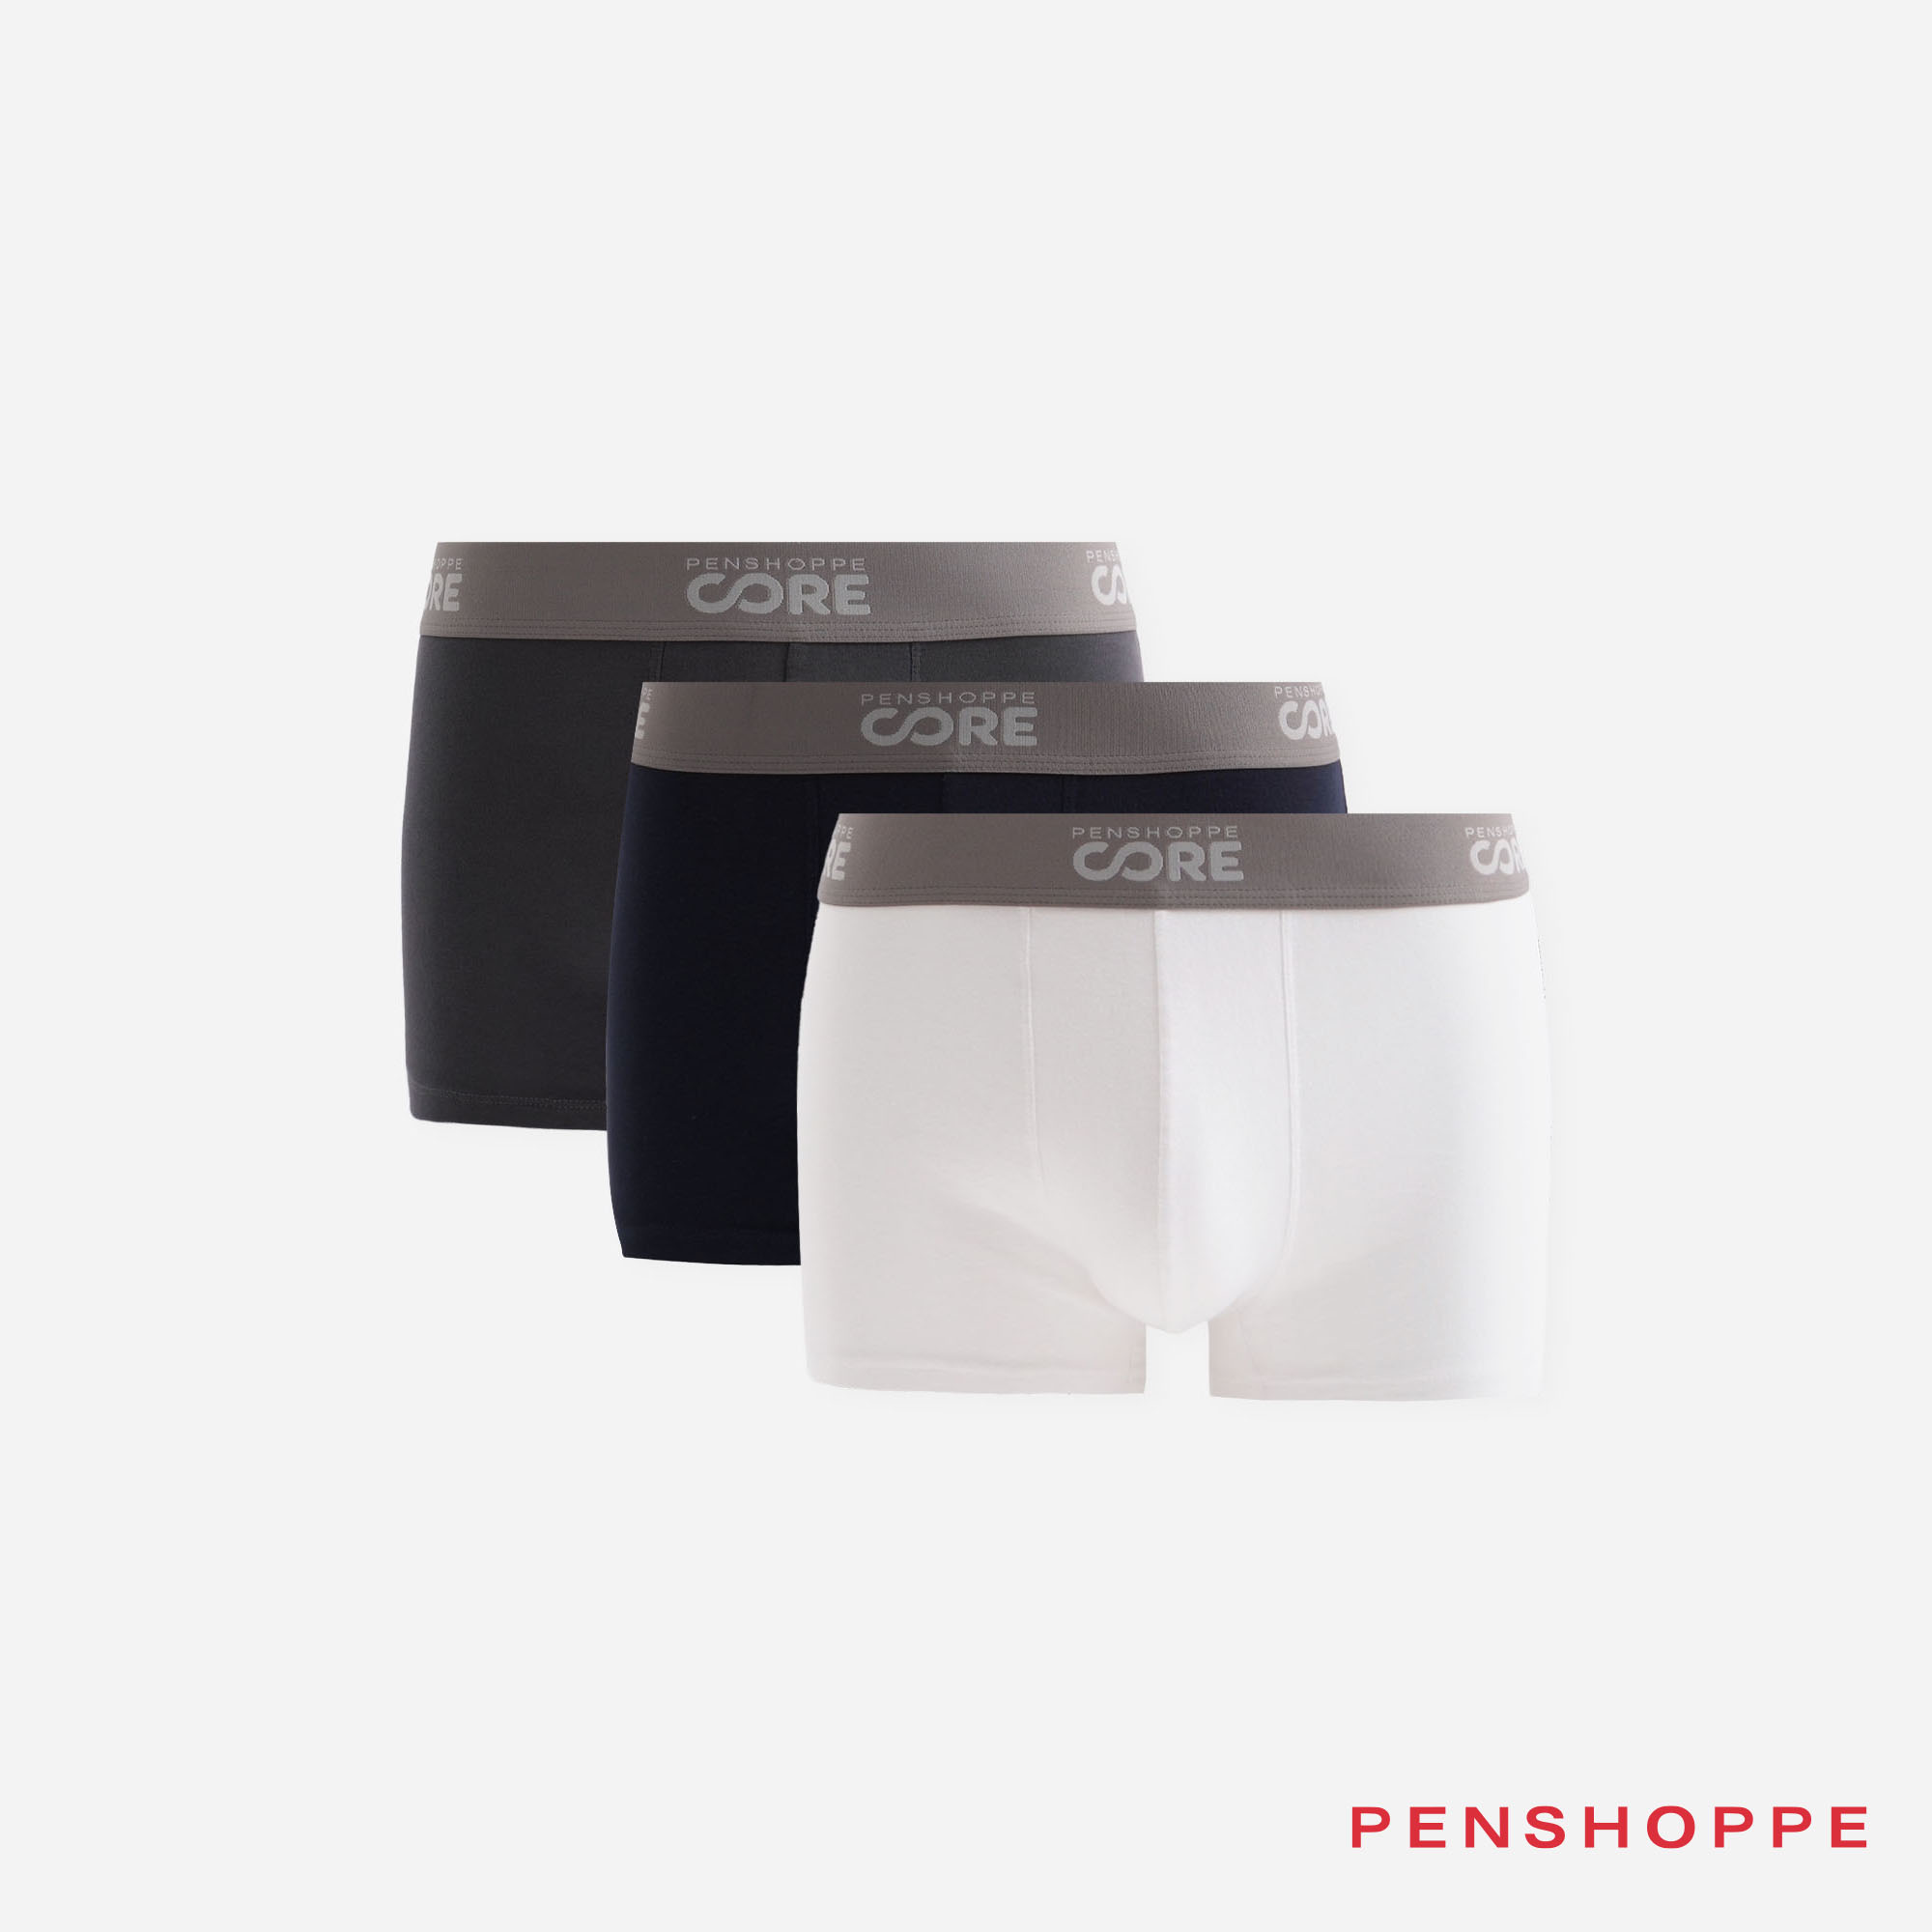 Core Briefs – PENSHOPPE